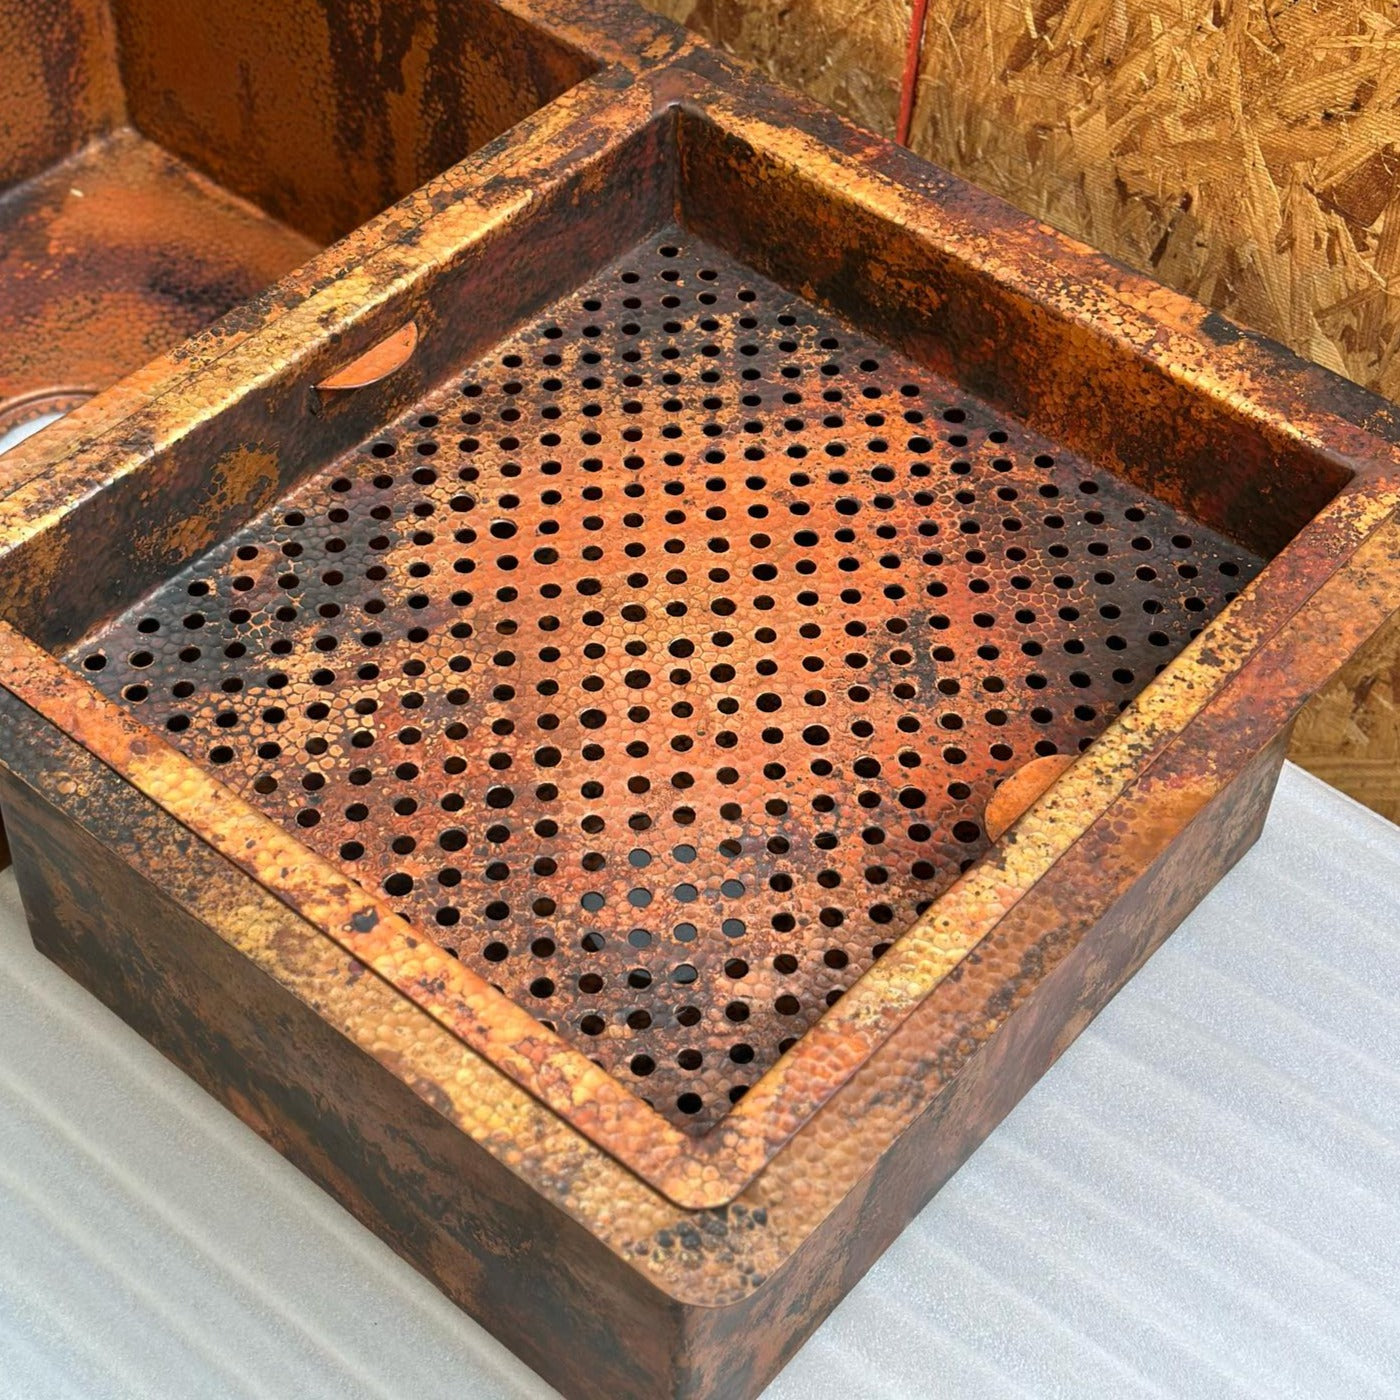 Copper Undermount sink